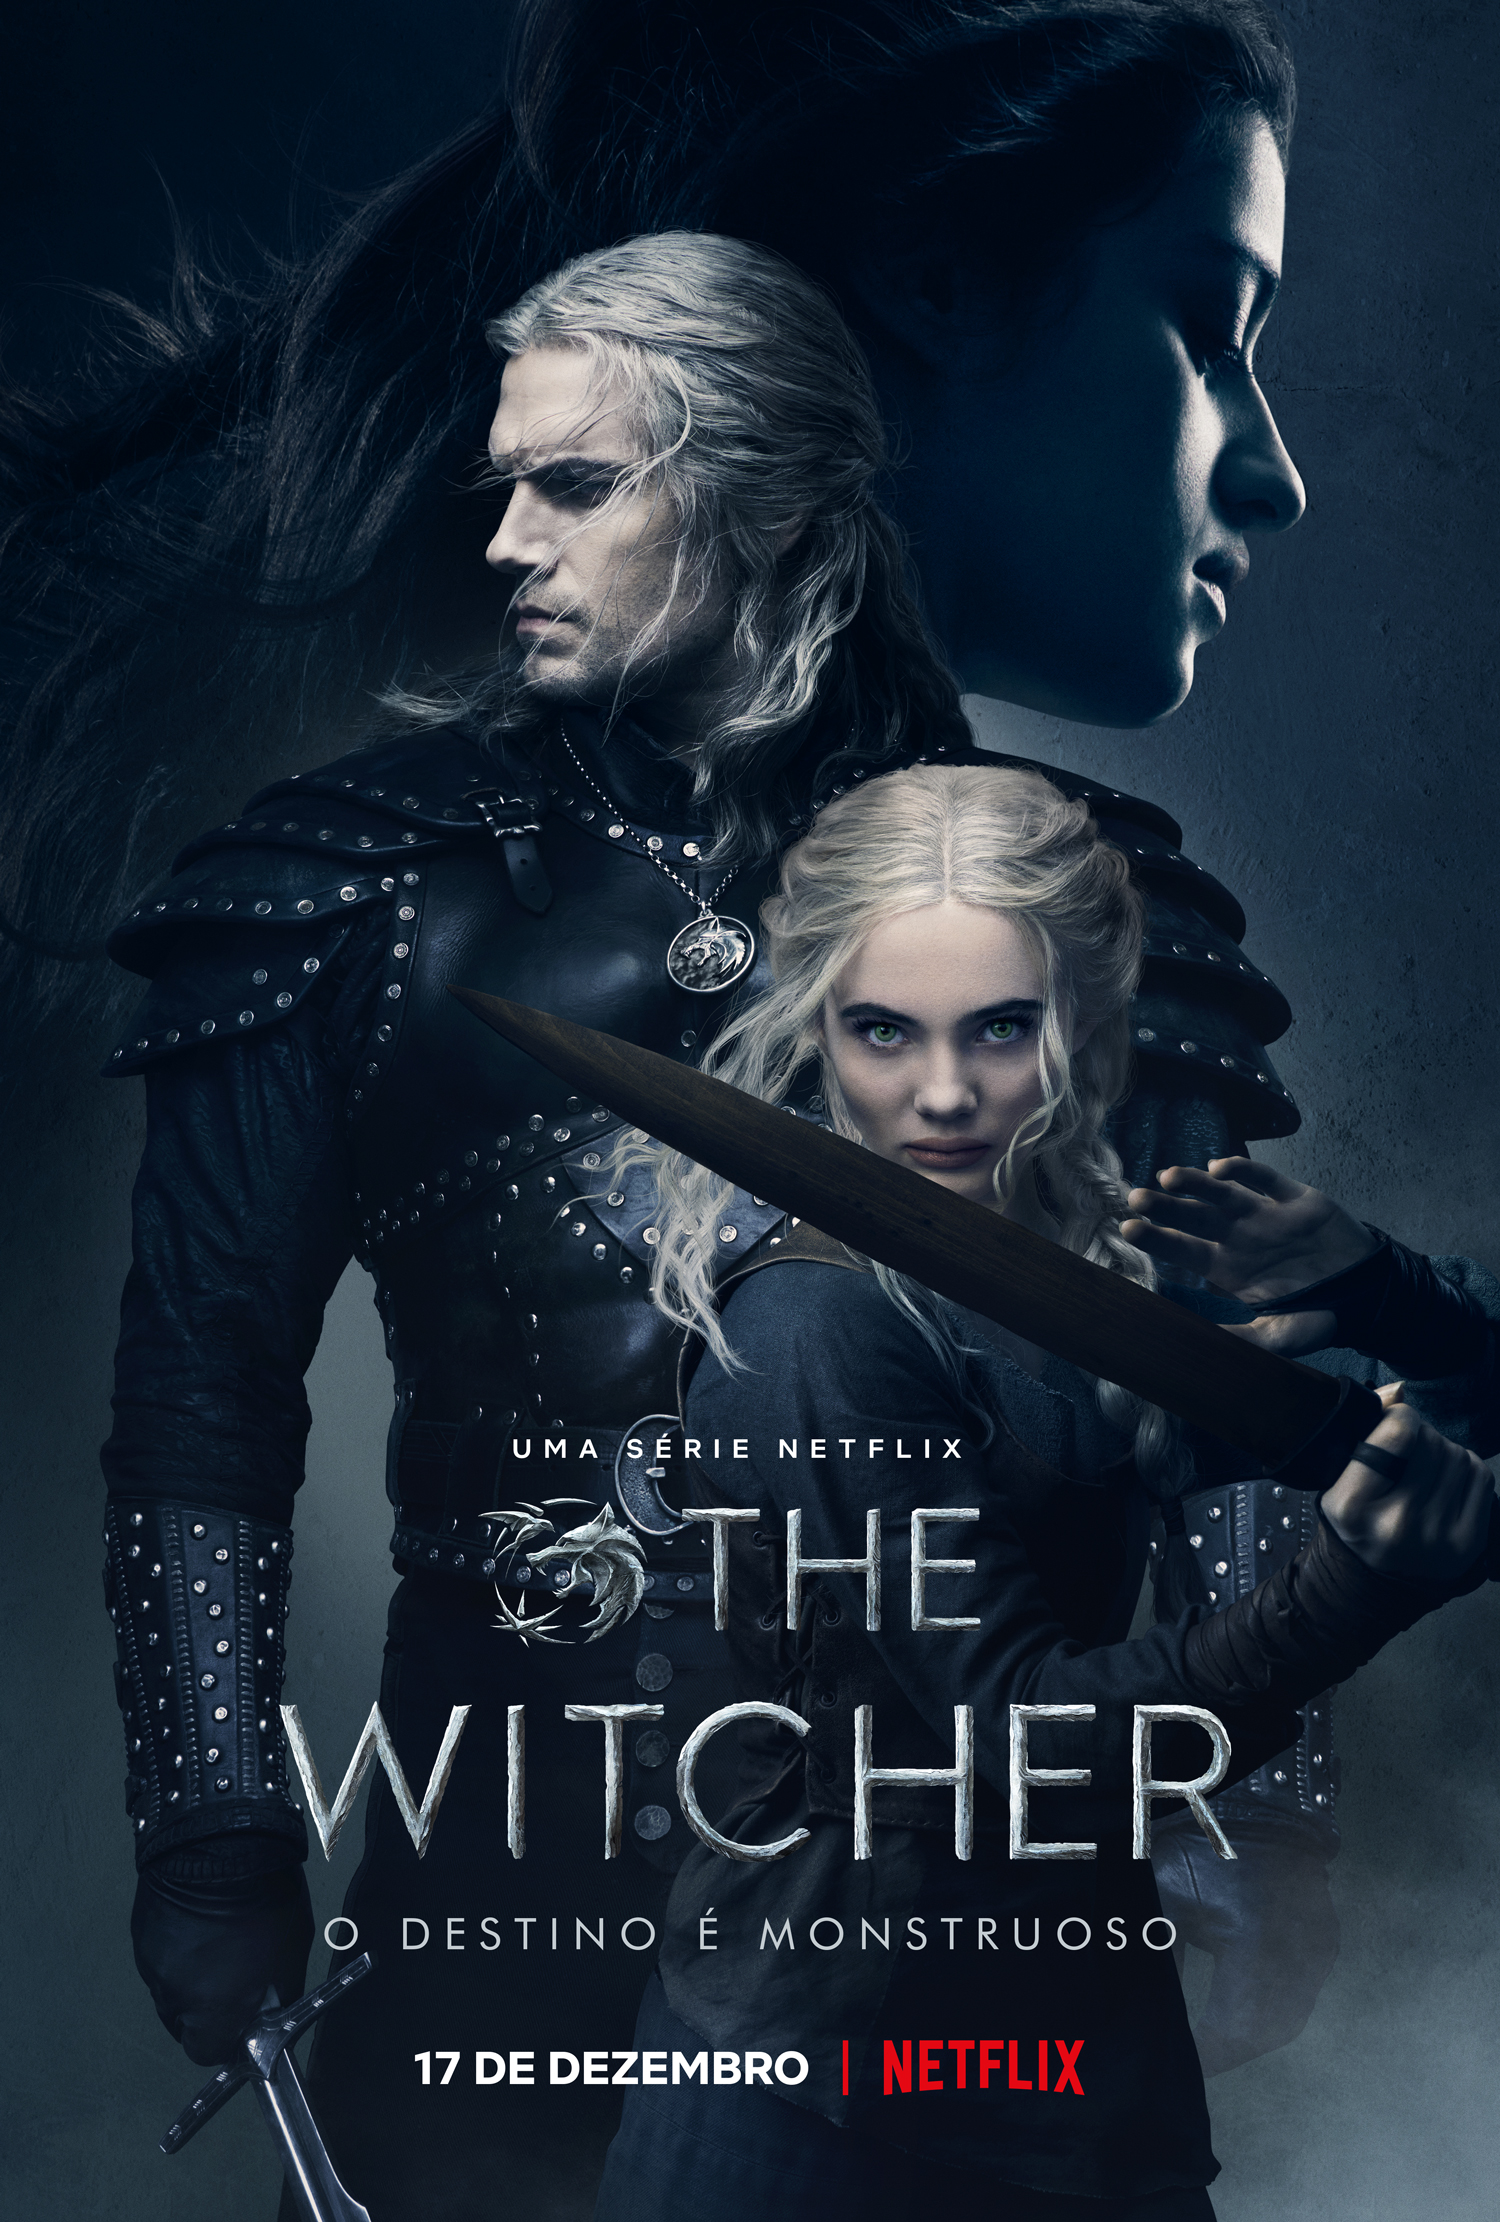 Segunda temporada de "The Witcher" (pôster) estreia na Netflix